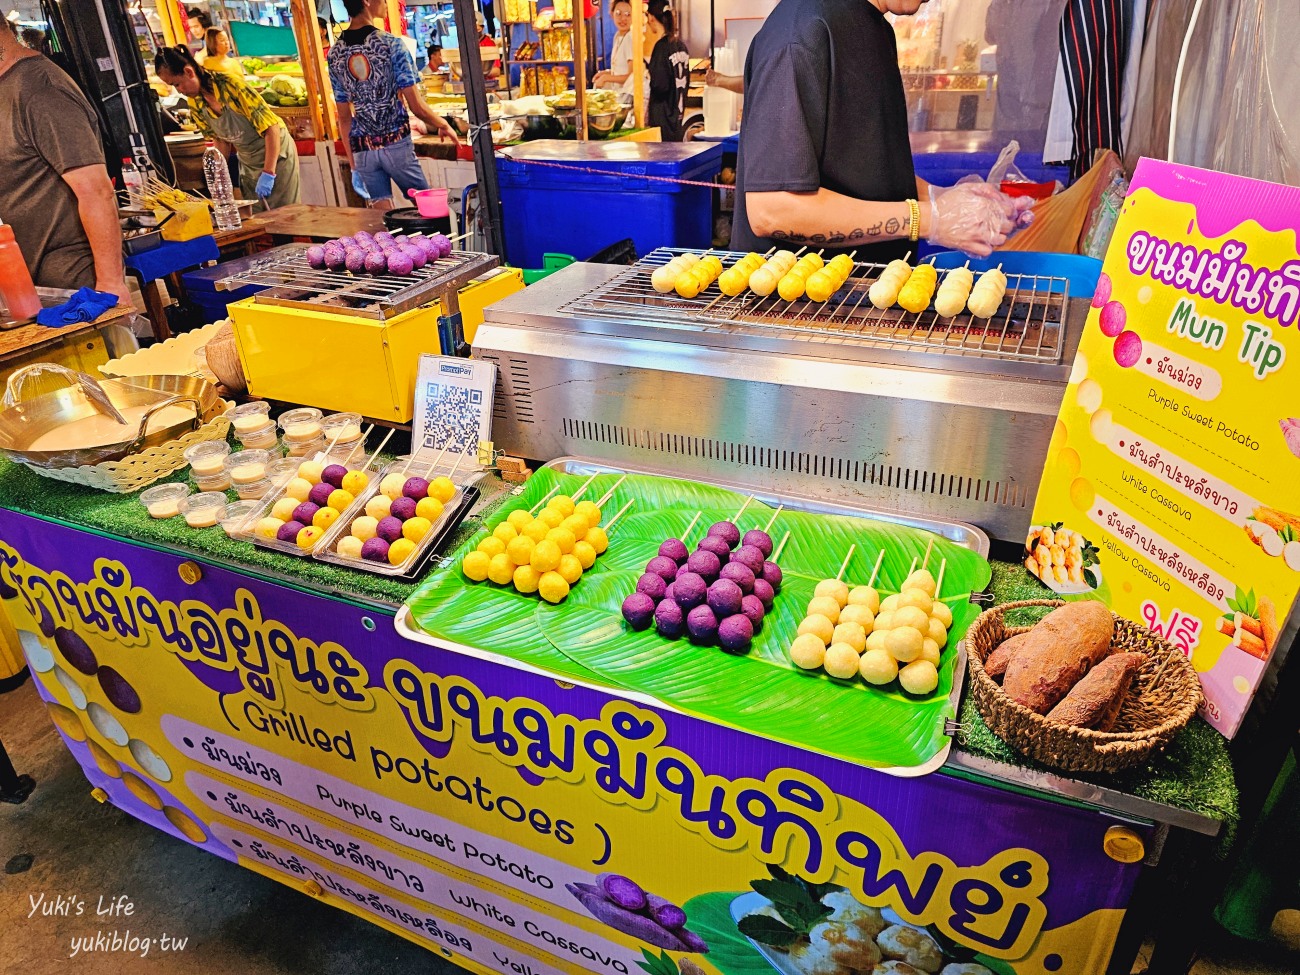 曼谷夜市推薦【席娜卡琳火車夜市】當地人愛逛的飛機夜市，便宜美食超多保證淪陷 - yukiblog.tw